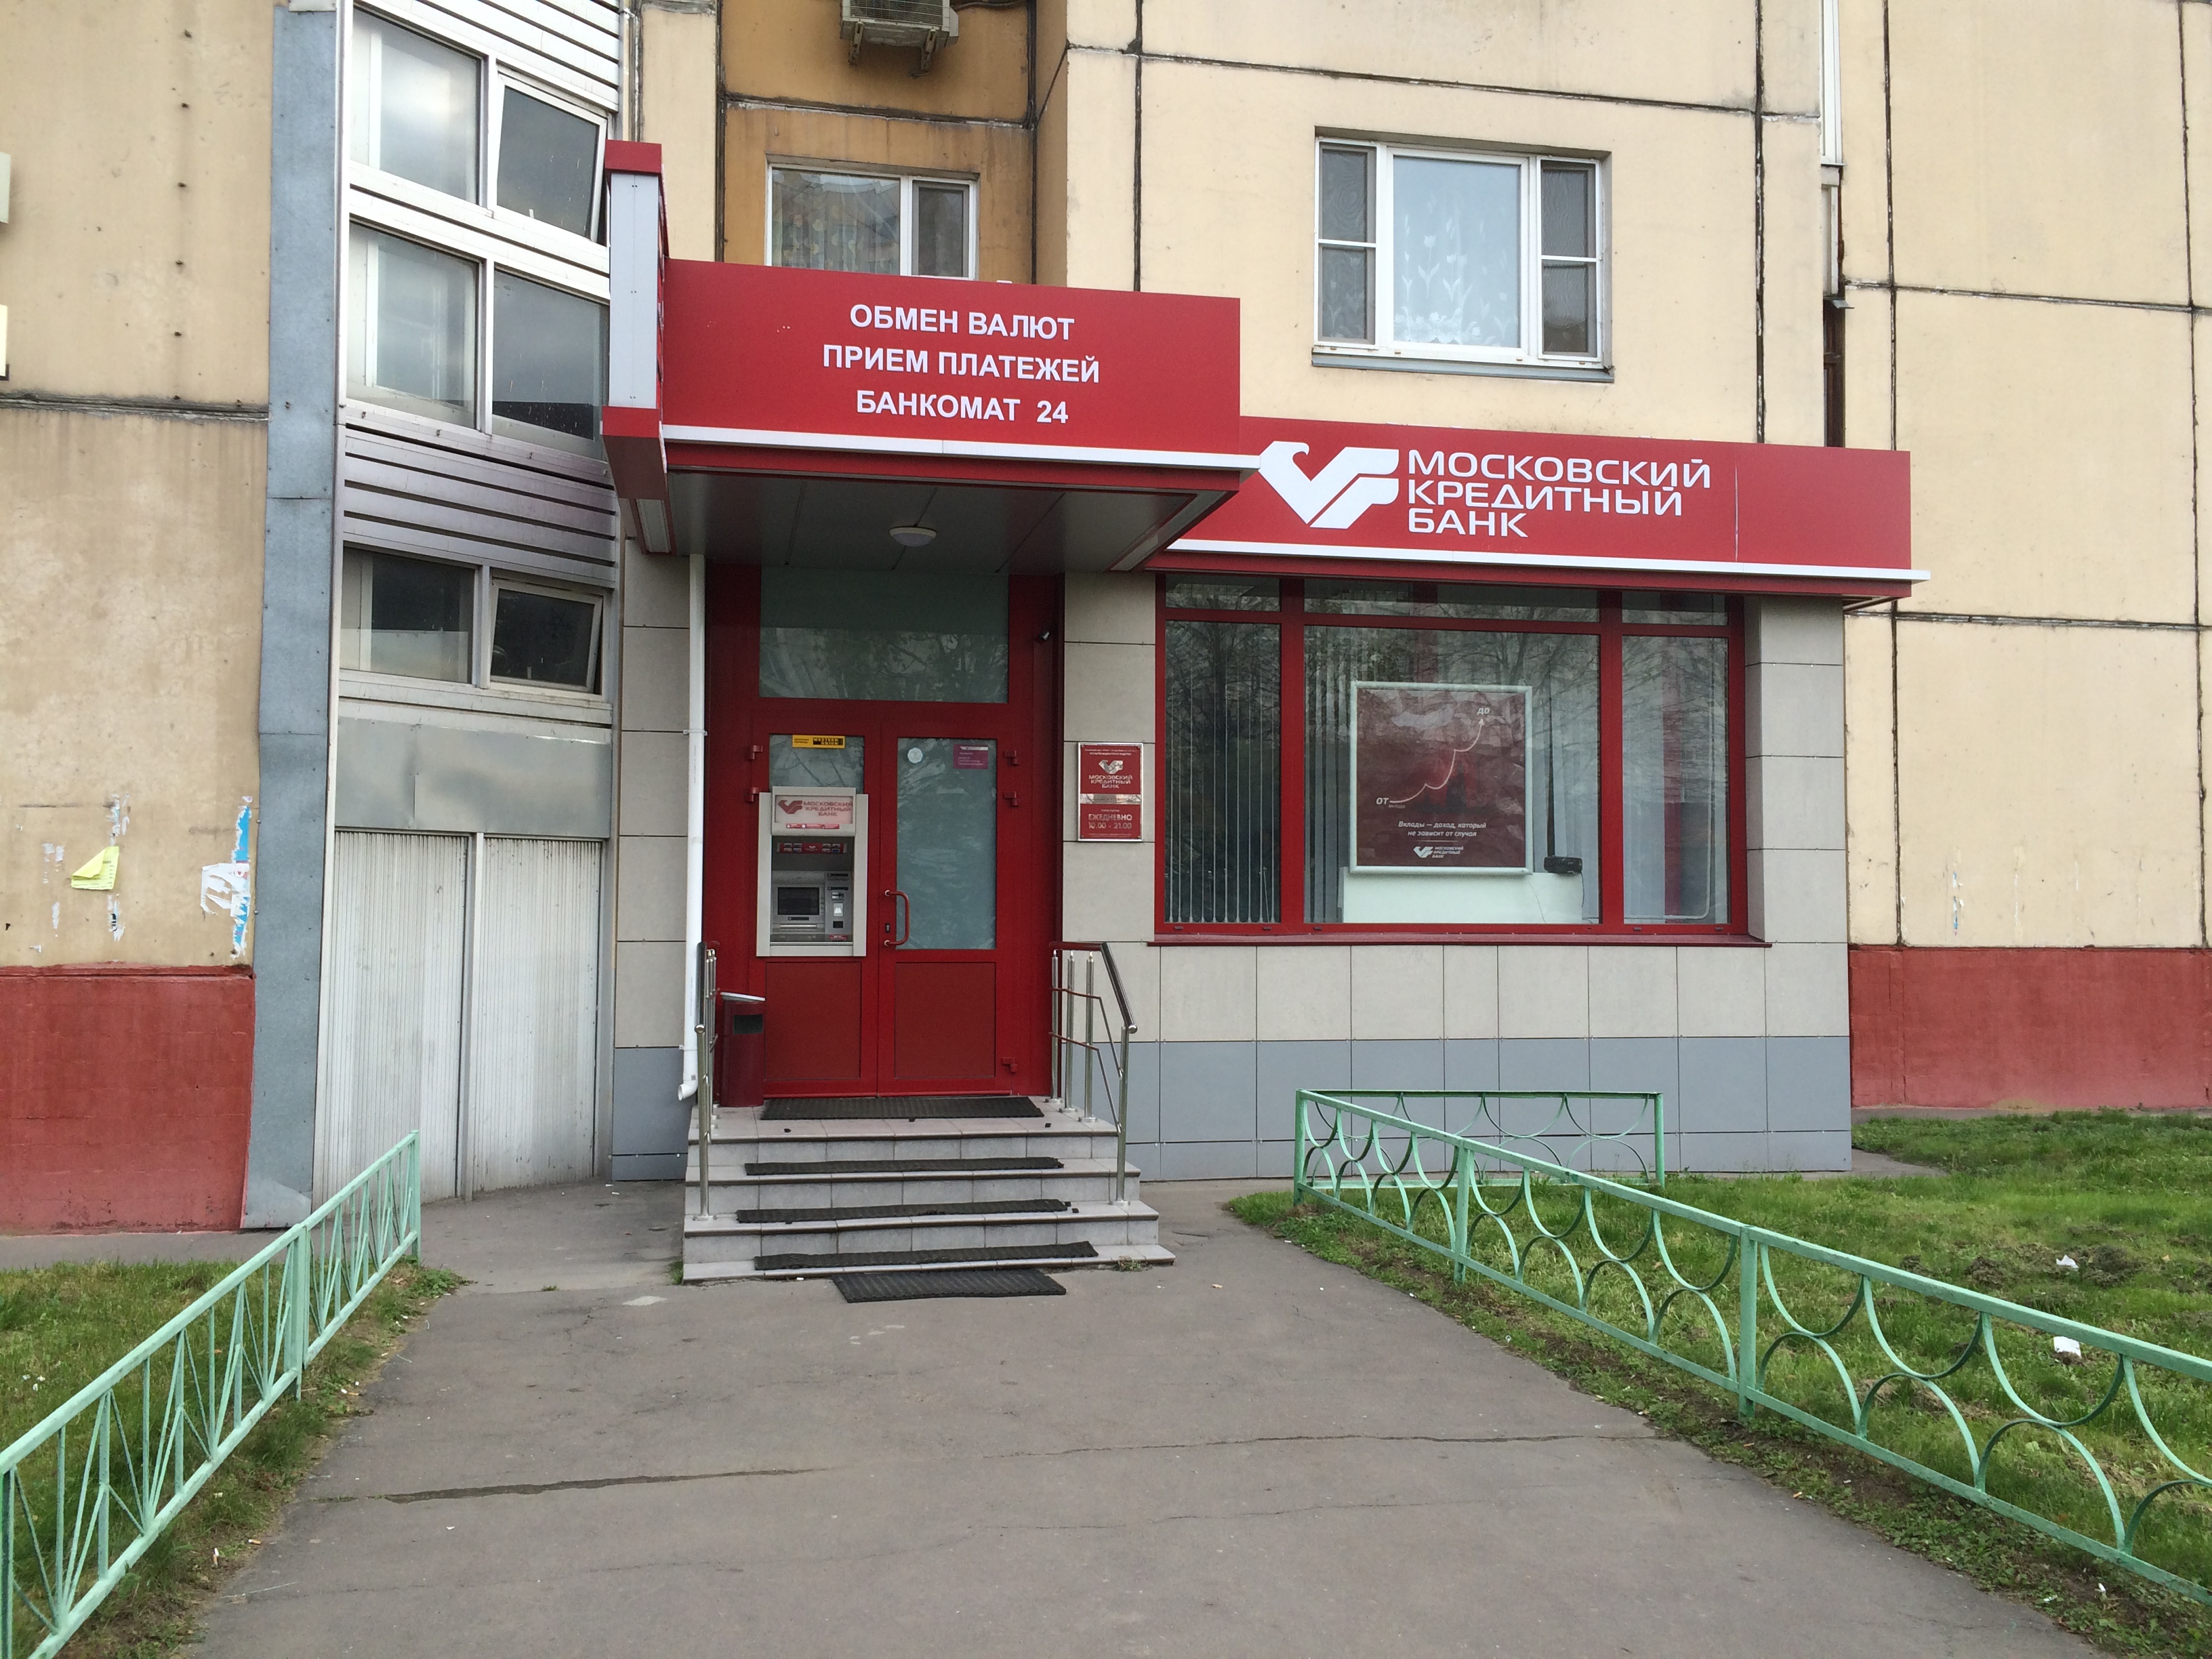 Адрес кредитный банк москвы